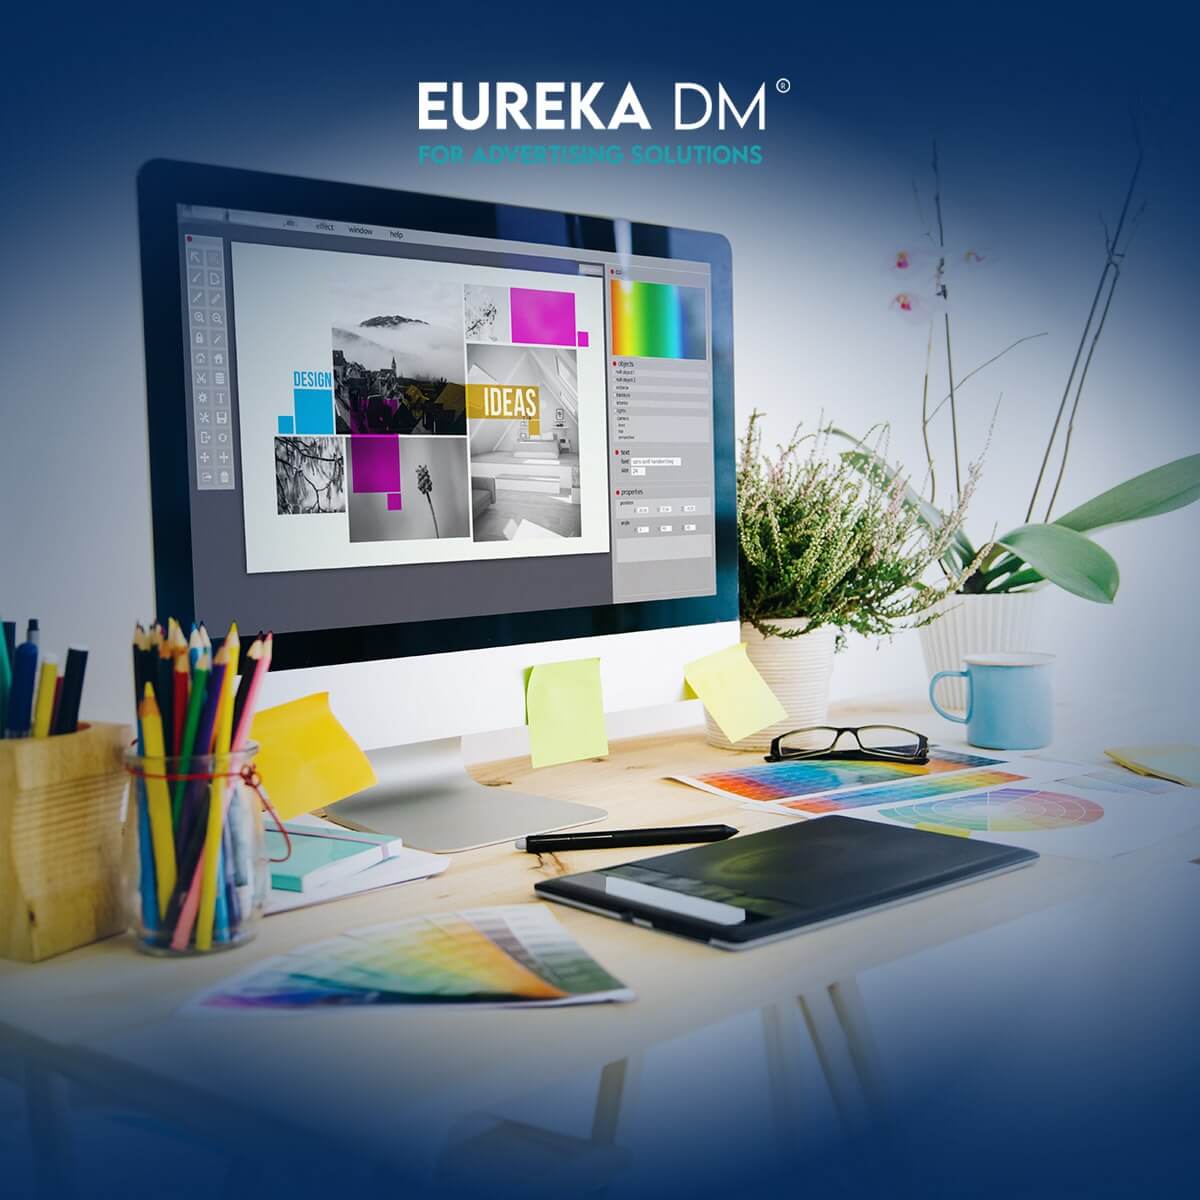 Our Graphic Design Services - Eureka DM